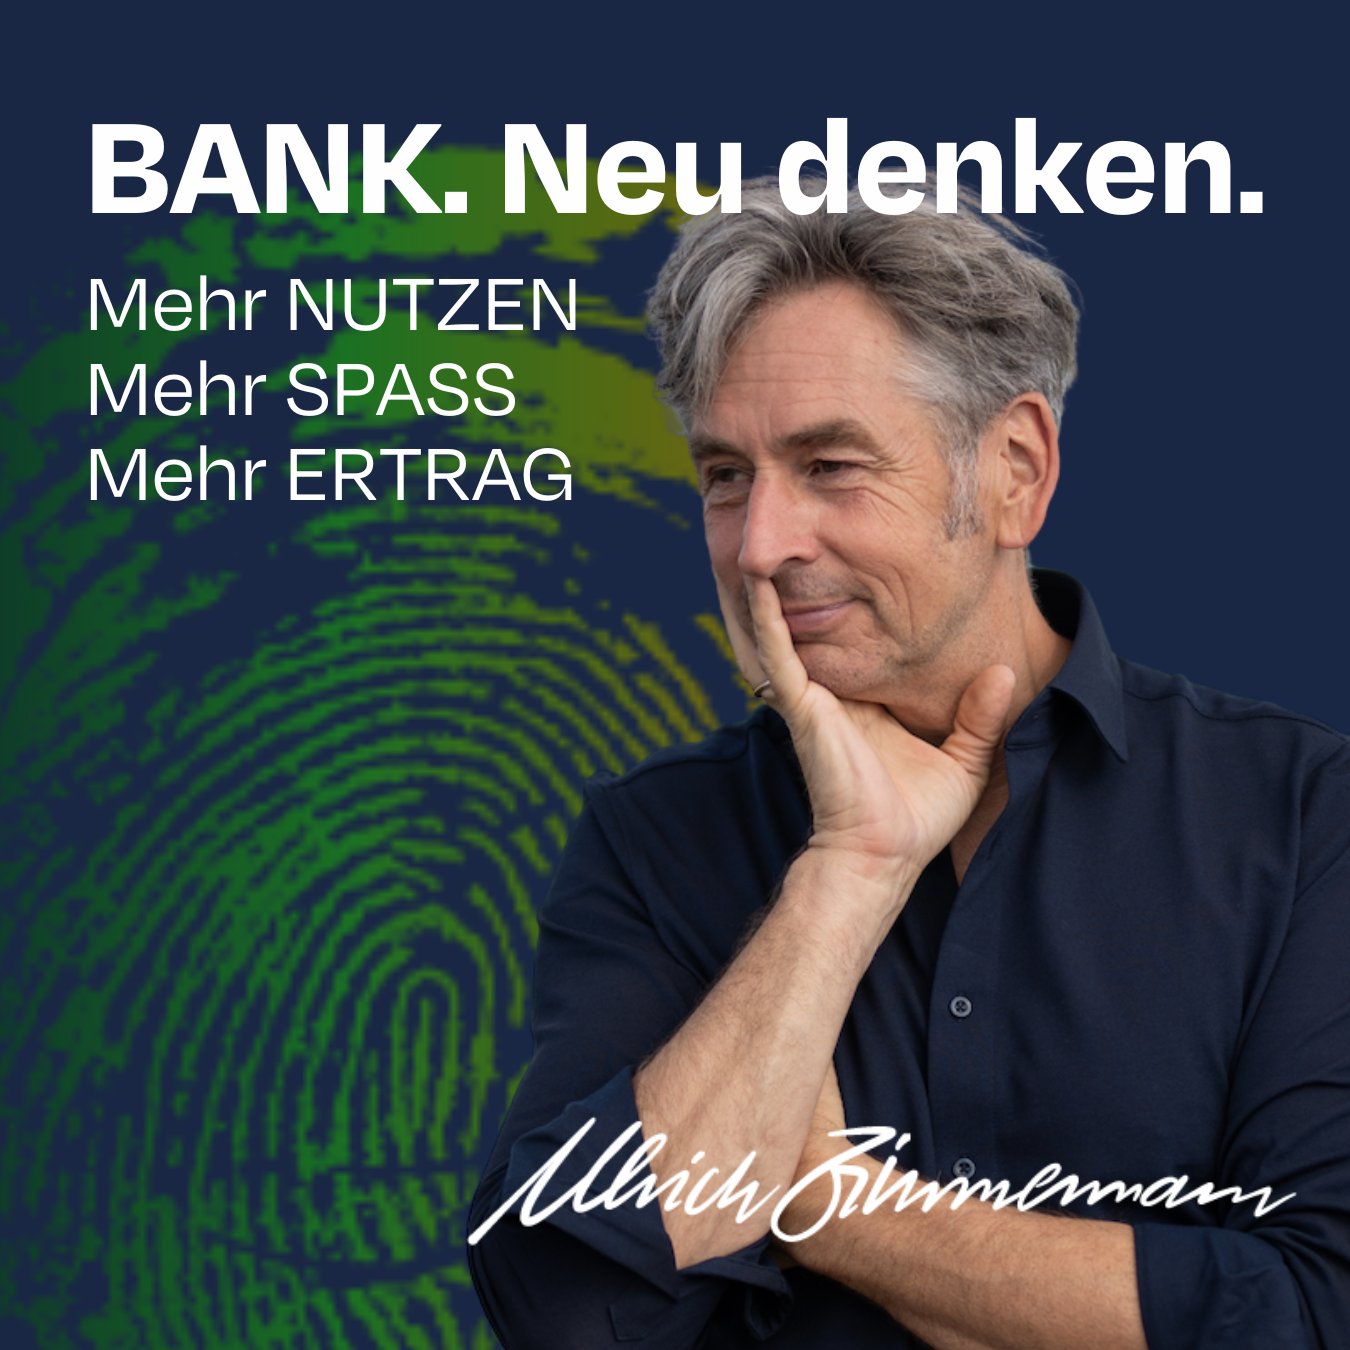 #035 WegeBedarf - BANK.Neu denken: Mehr NUTZEN SPASS ERTRAG in der FirmenkundenBank.